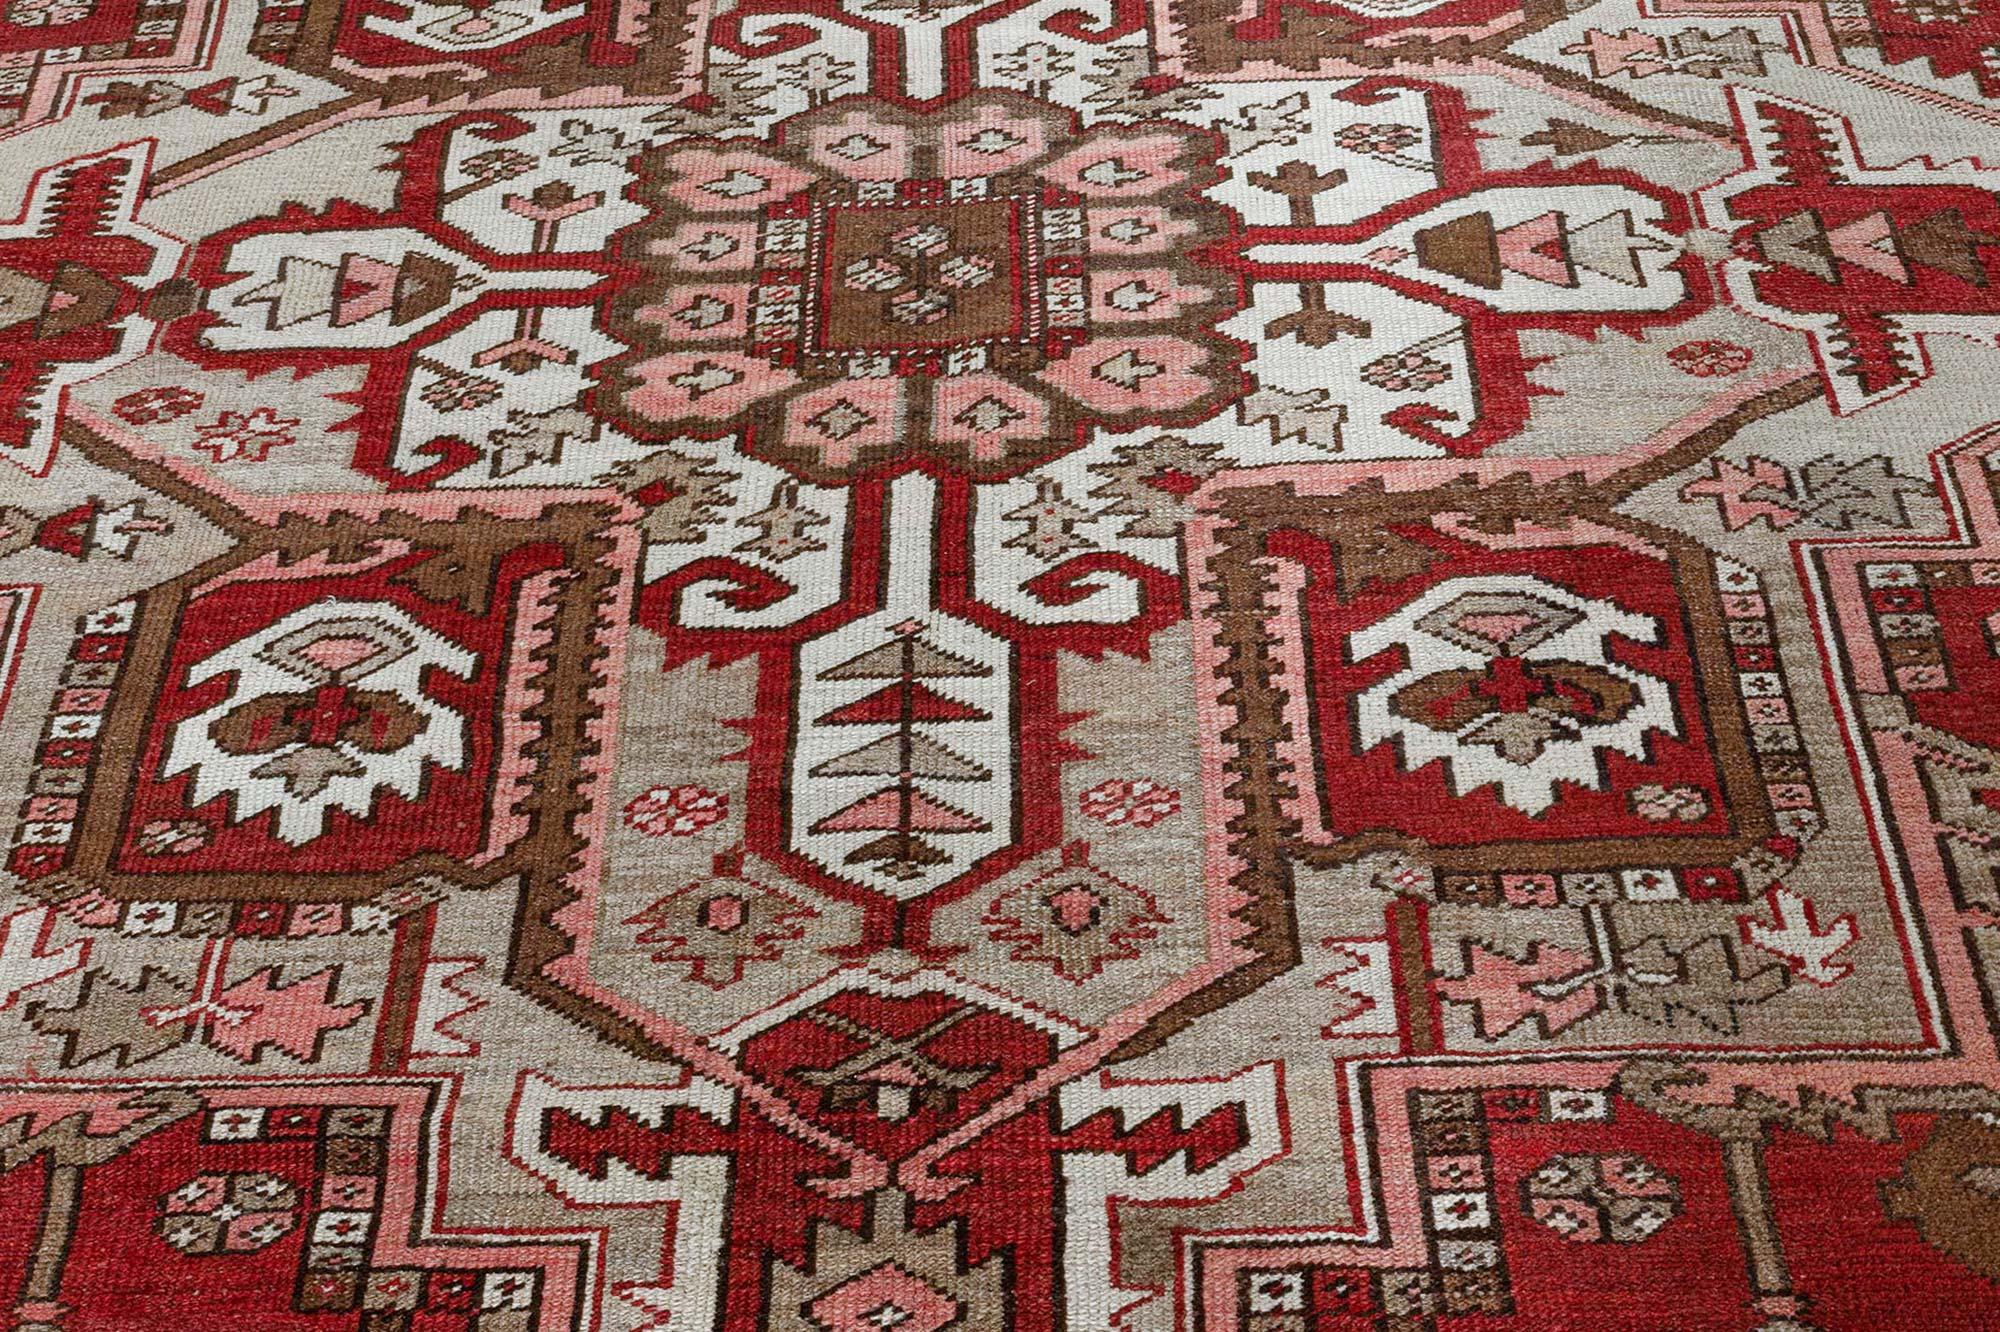 Antiker persischer Heriz-Teppich
Größe: 10'0